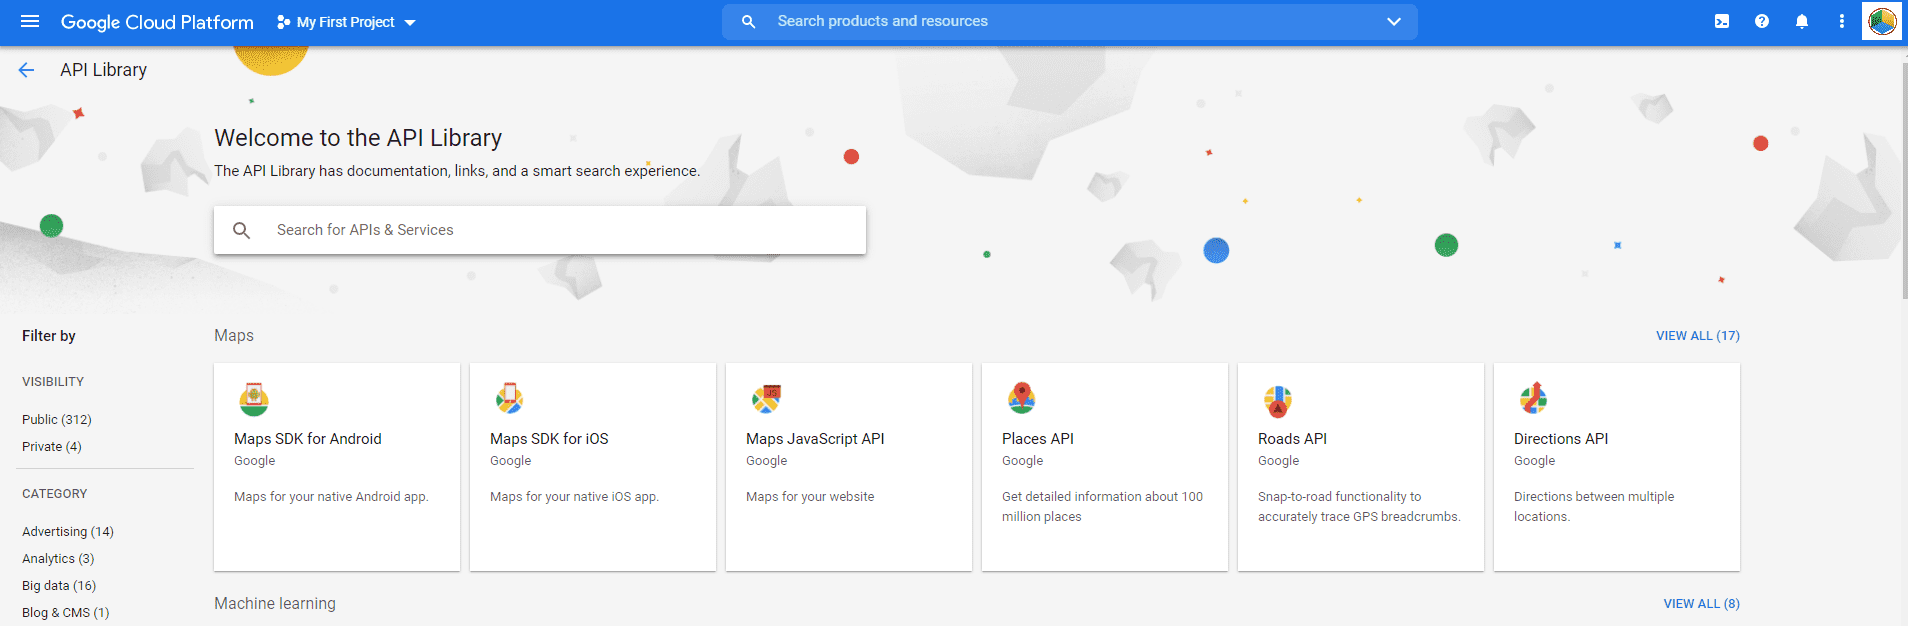 Google API Services